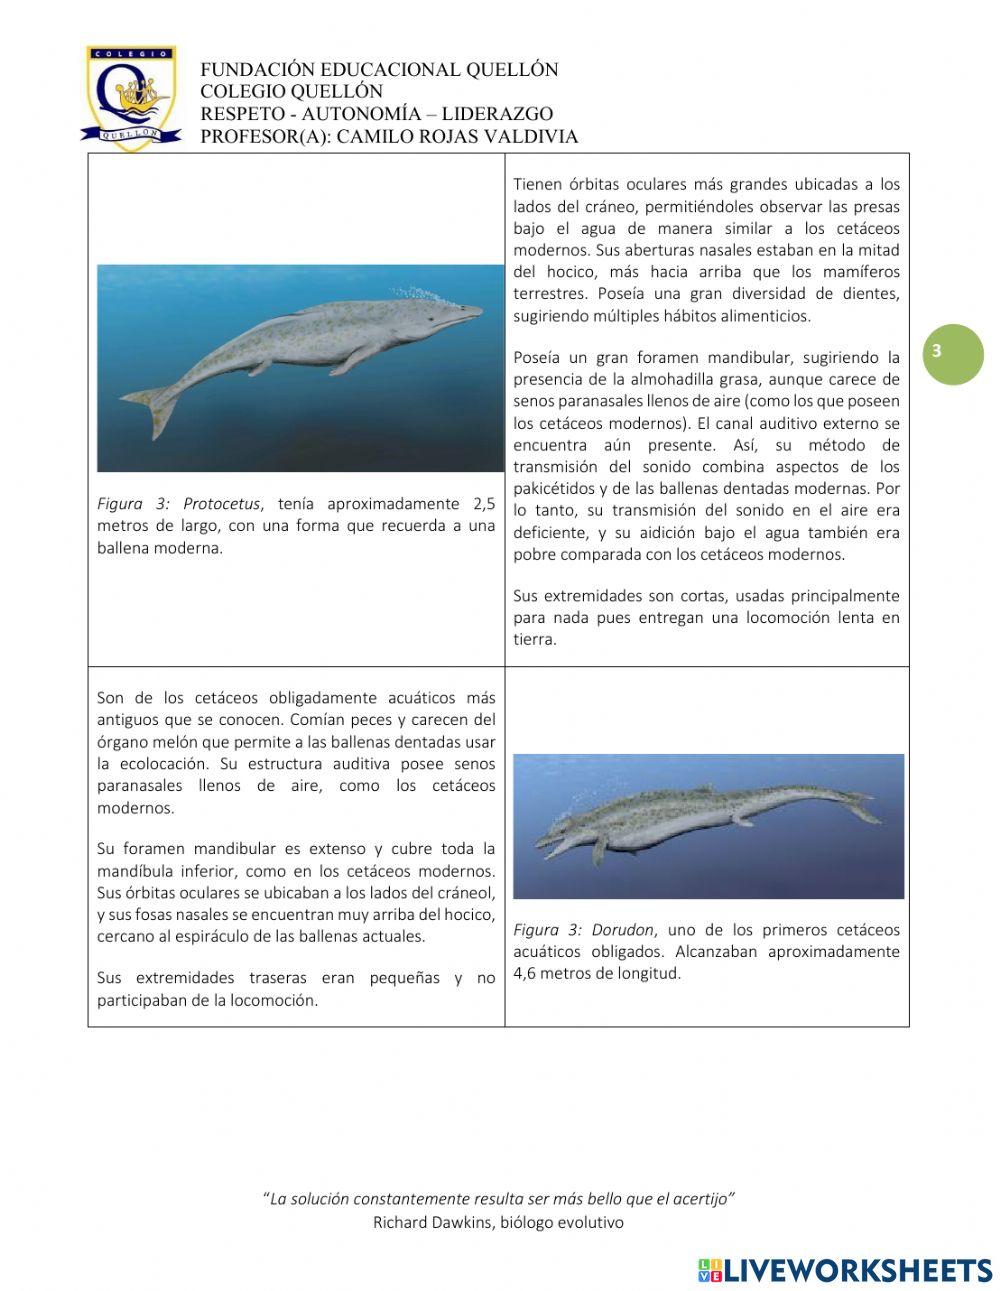 Evolución de los cetáceos